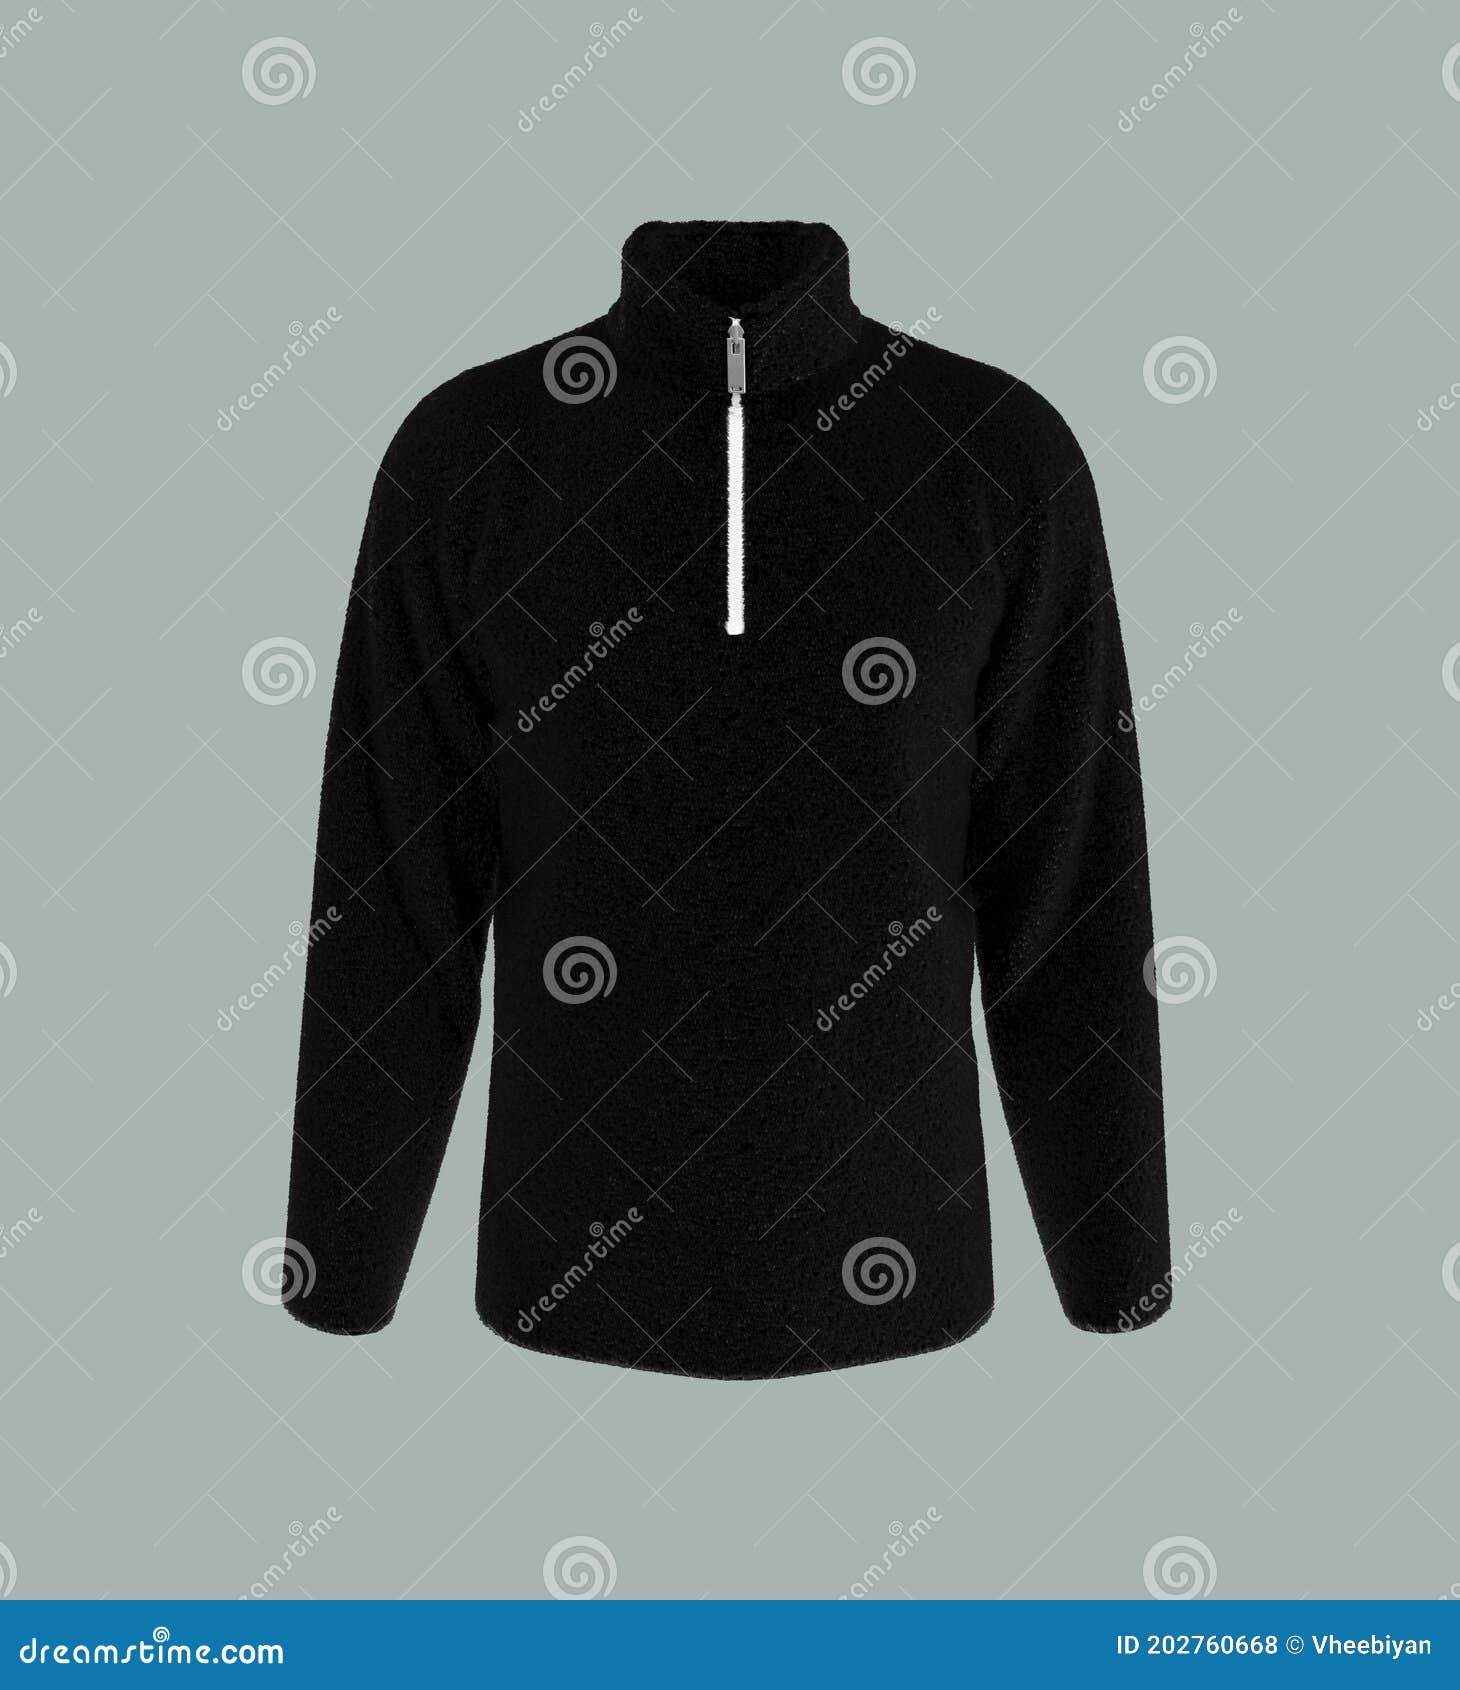 Download Fleece Tracksuit Top Jacket With Half Zip Design Stock ...